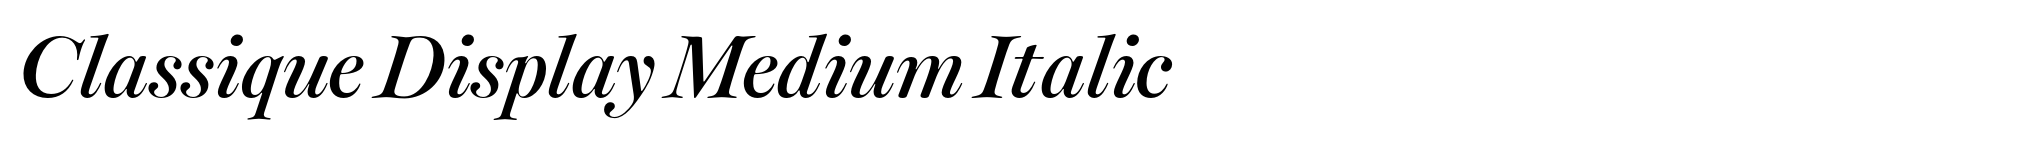 Classique Display Medium Italic image